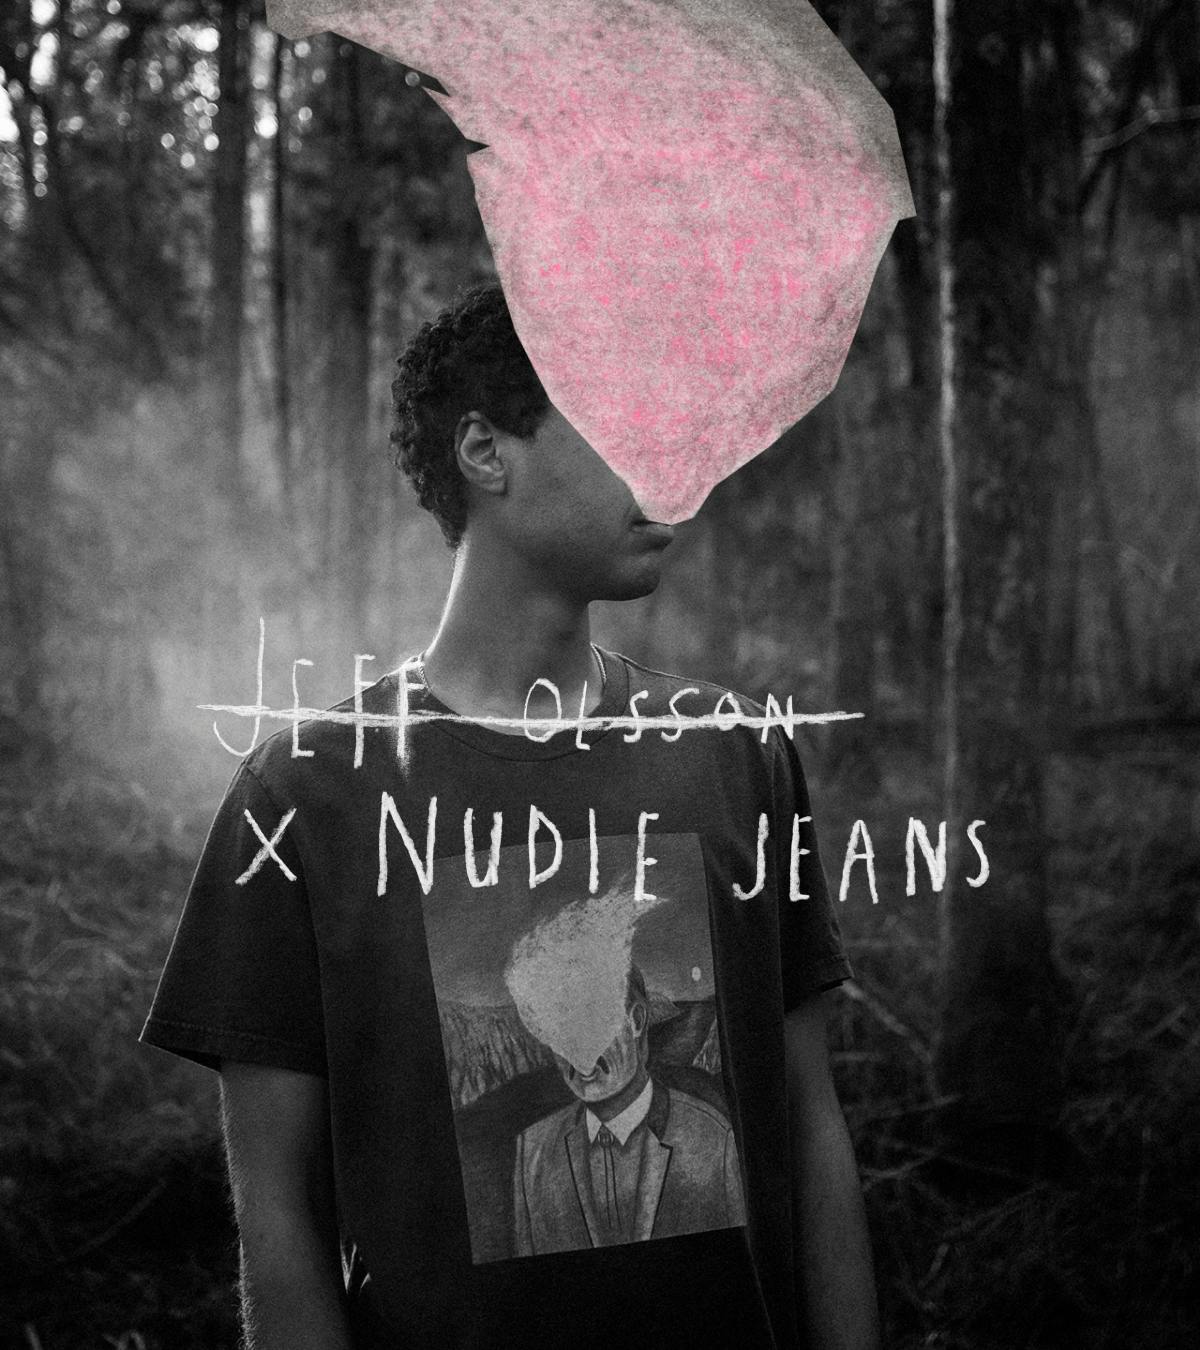 Jeff-Olsson x Nudie Jeans 